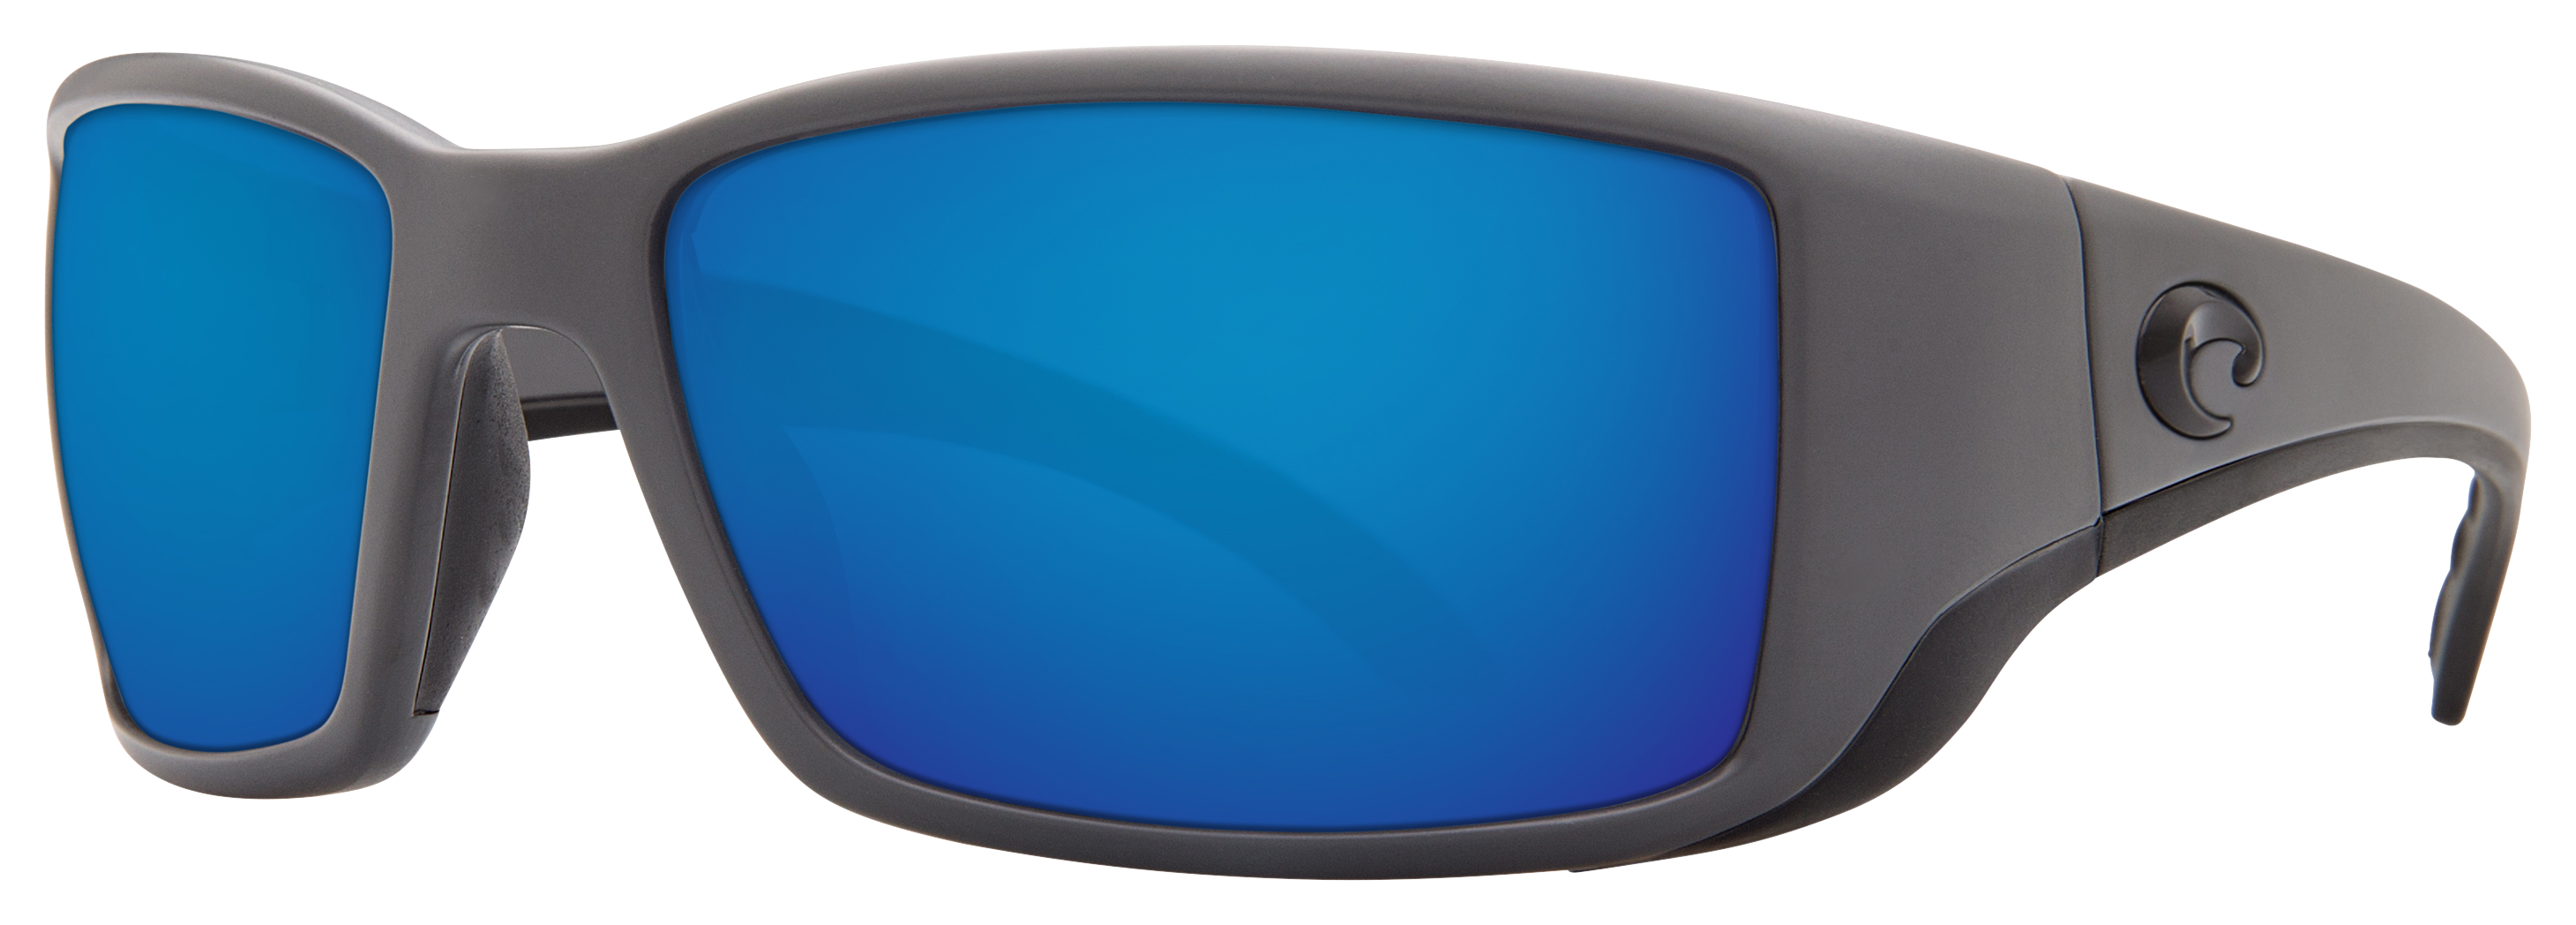 Costa Del Mar Blackfin 580G Glass Polarized Sunglasses - Matte Gray/Blue Mirror - Large